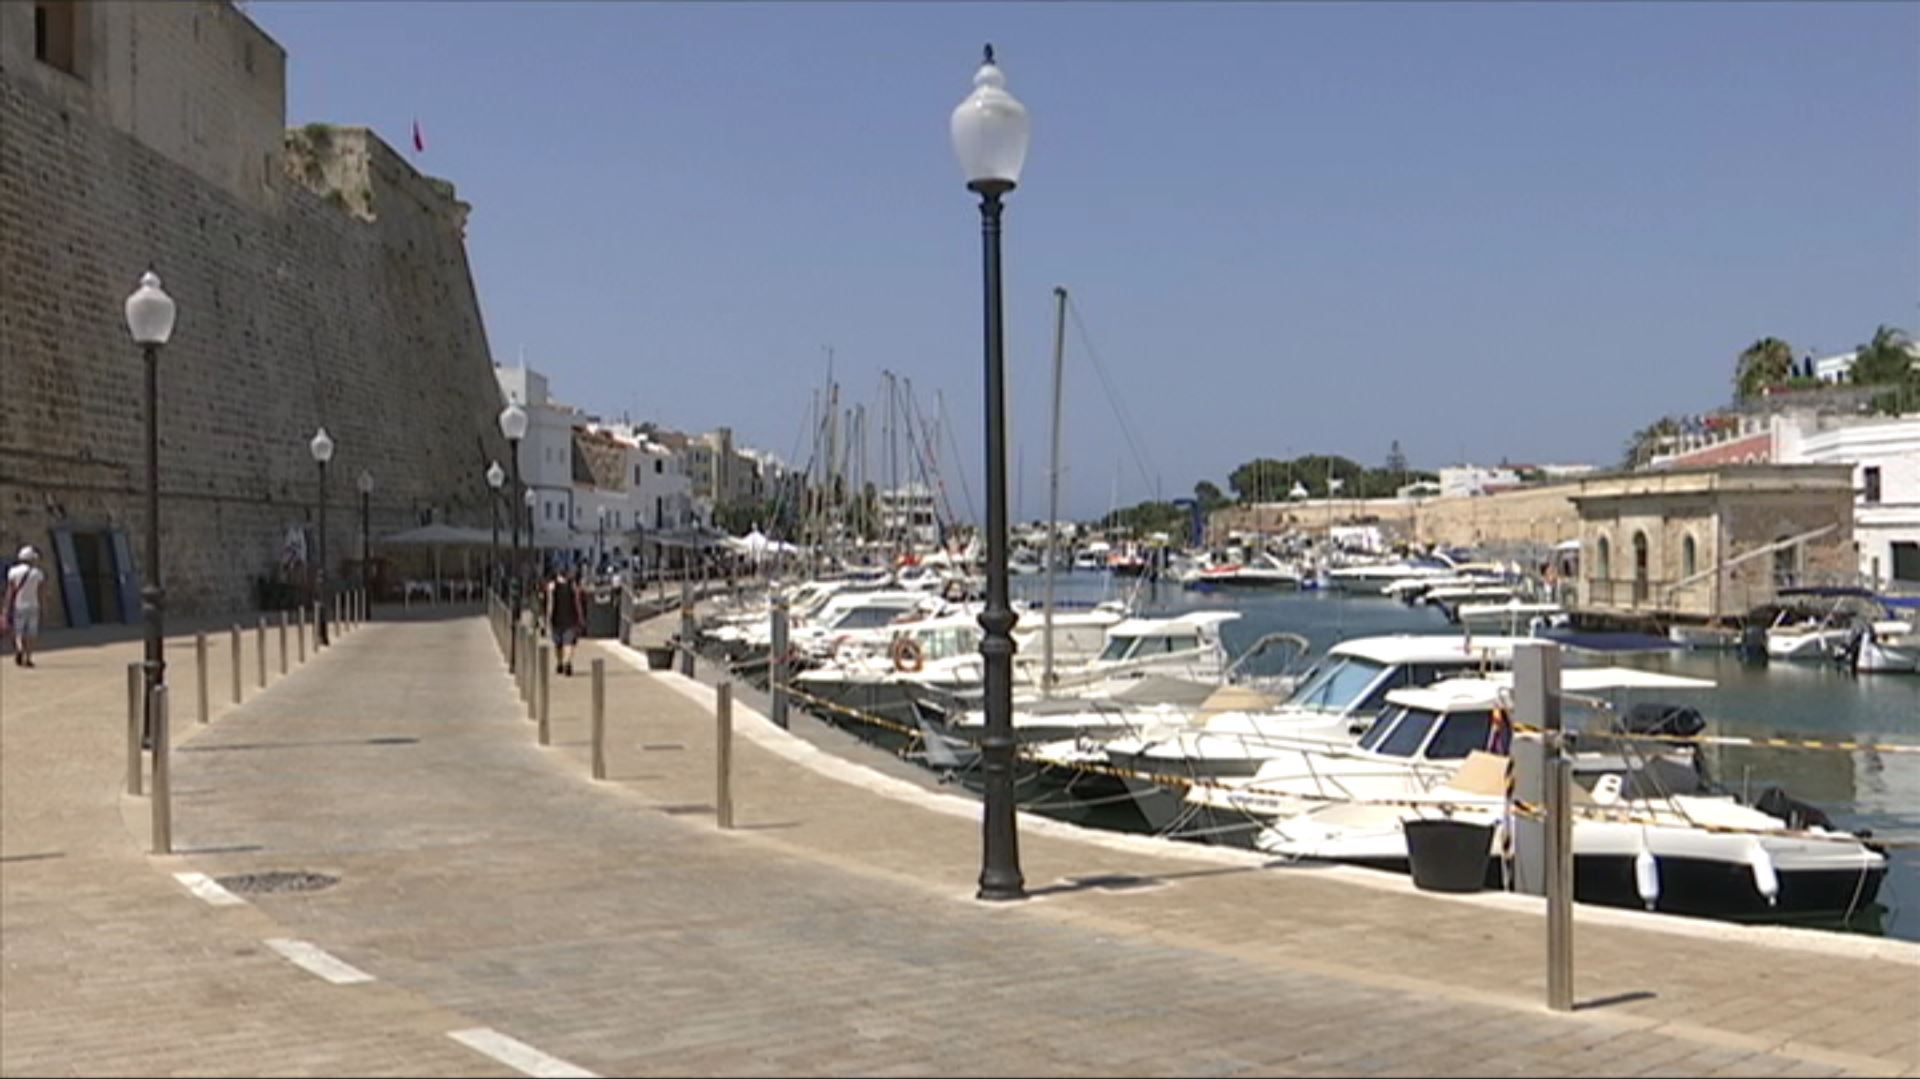 Les obres tornaran al port interior de Ciutadella quan acabi l’estiu